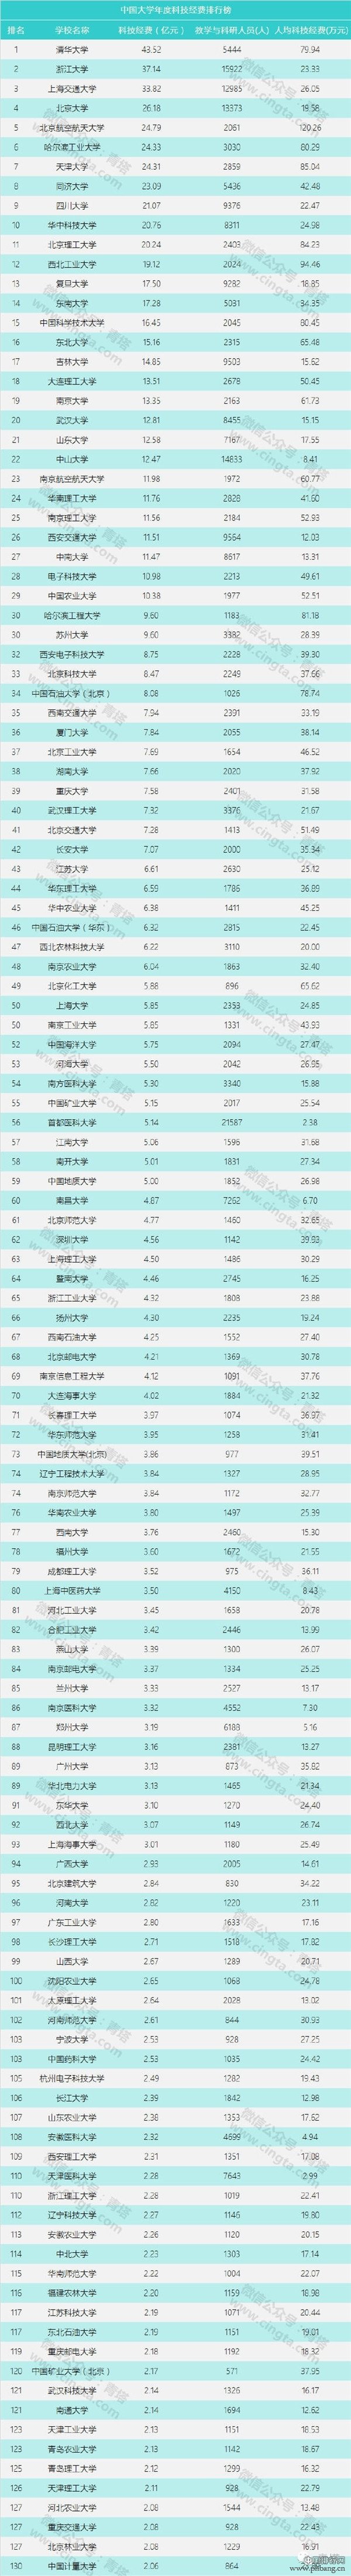 中国大学年度科技经费排行榜：清华43亿居首